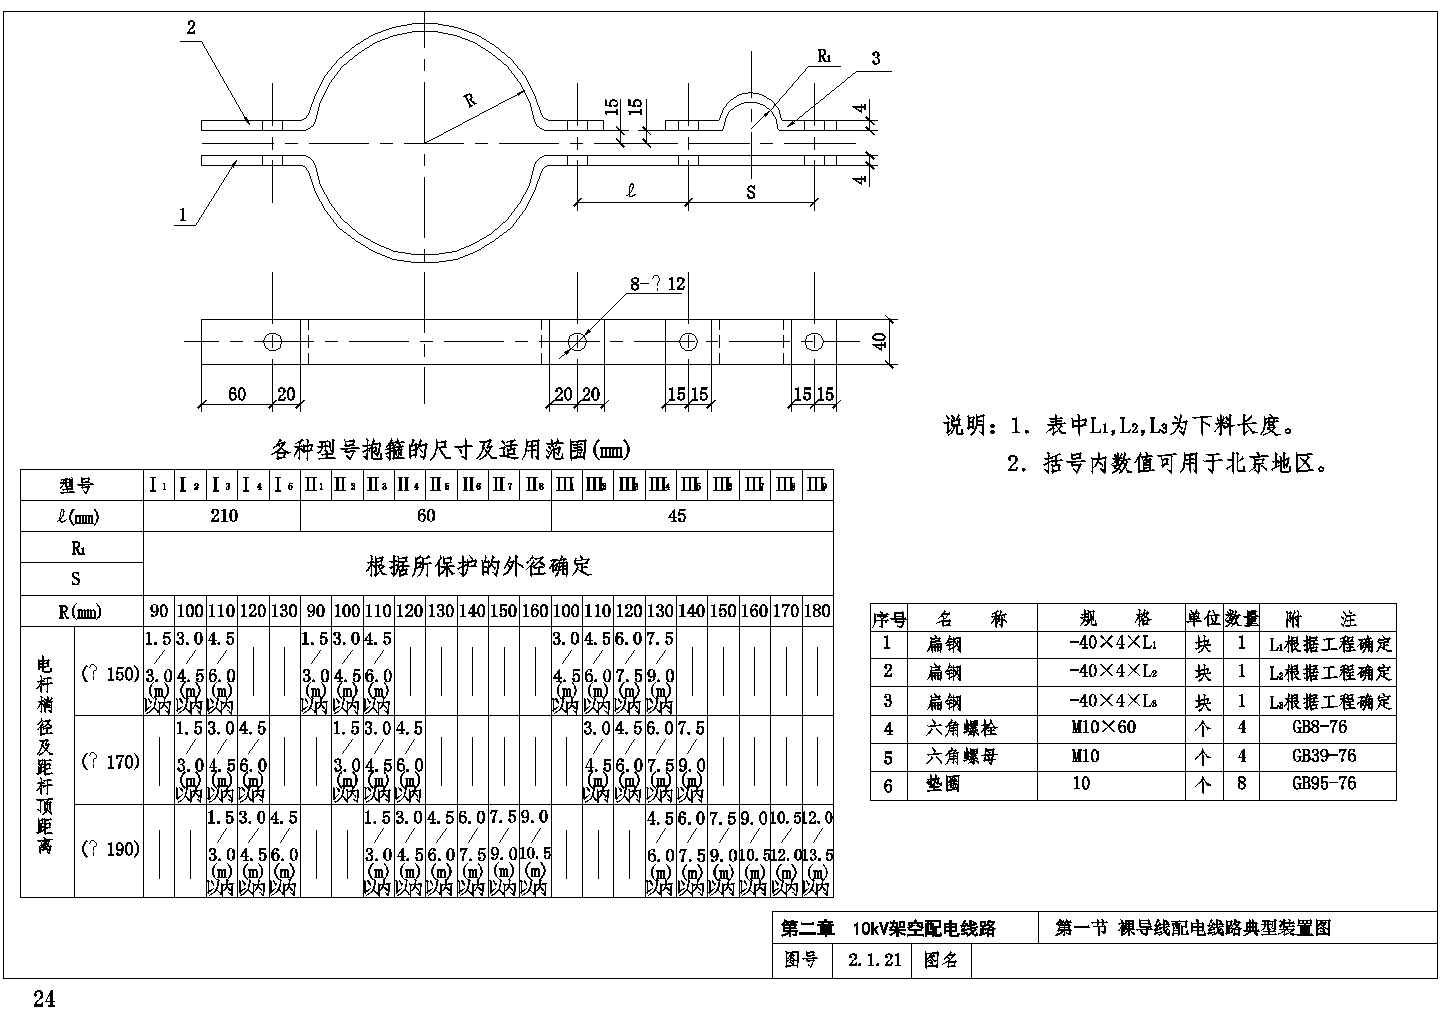 10kV架空线工程通用设计施工图